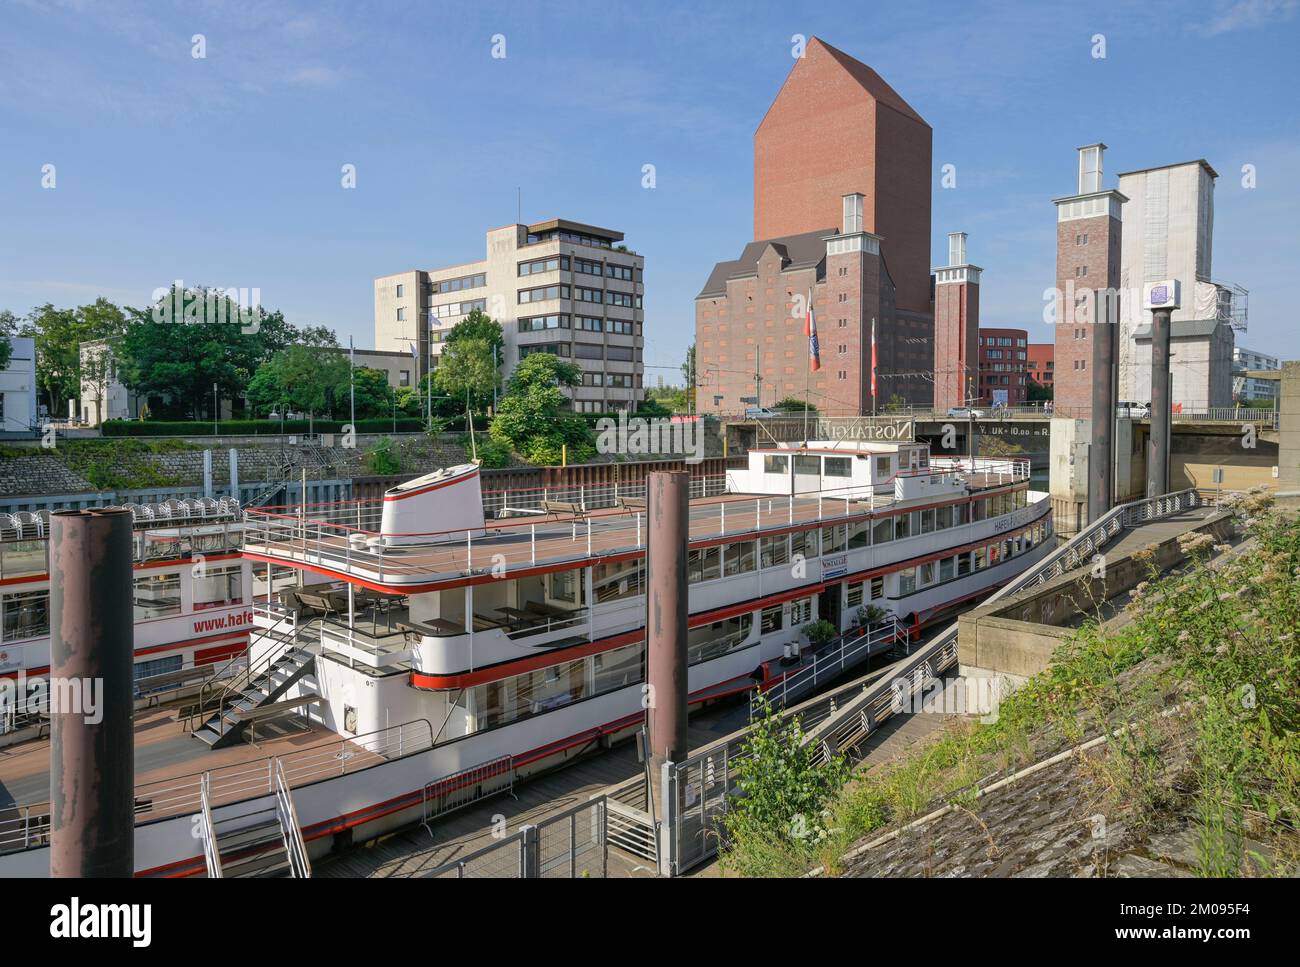 Schiffsanleger Hafenrundfahrt, Schwanentor, Innenhafen, Duisburg, Nordrhein-Westfalen, Deutschland Stock Photo